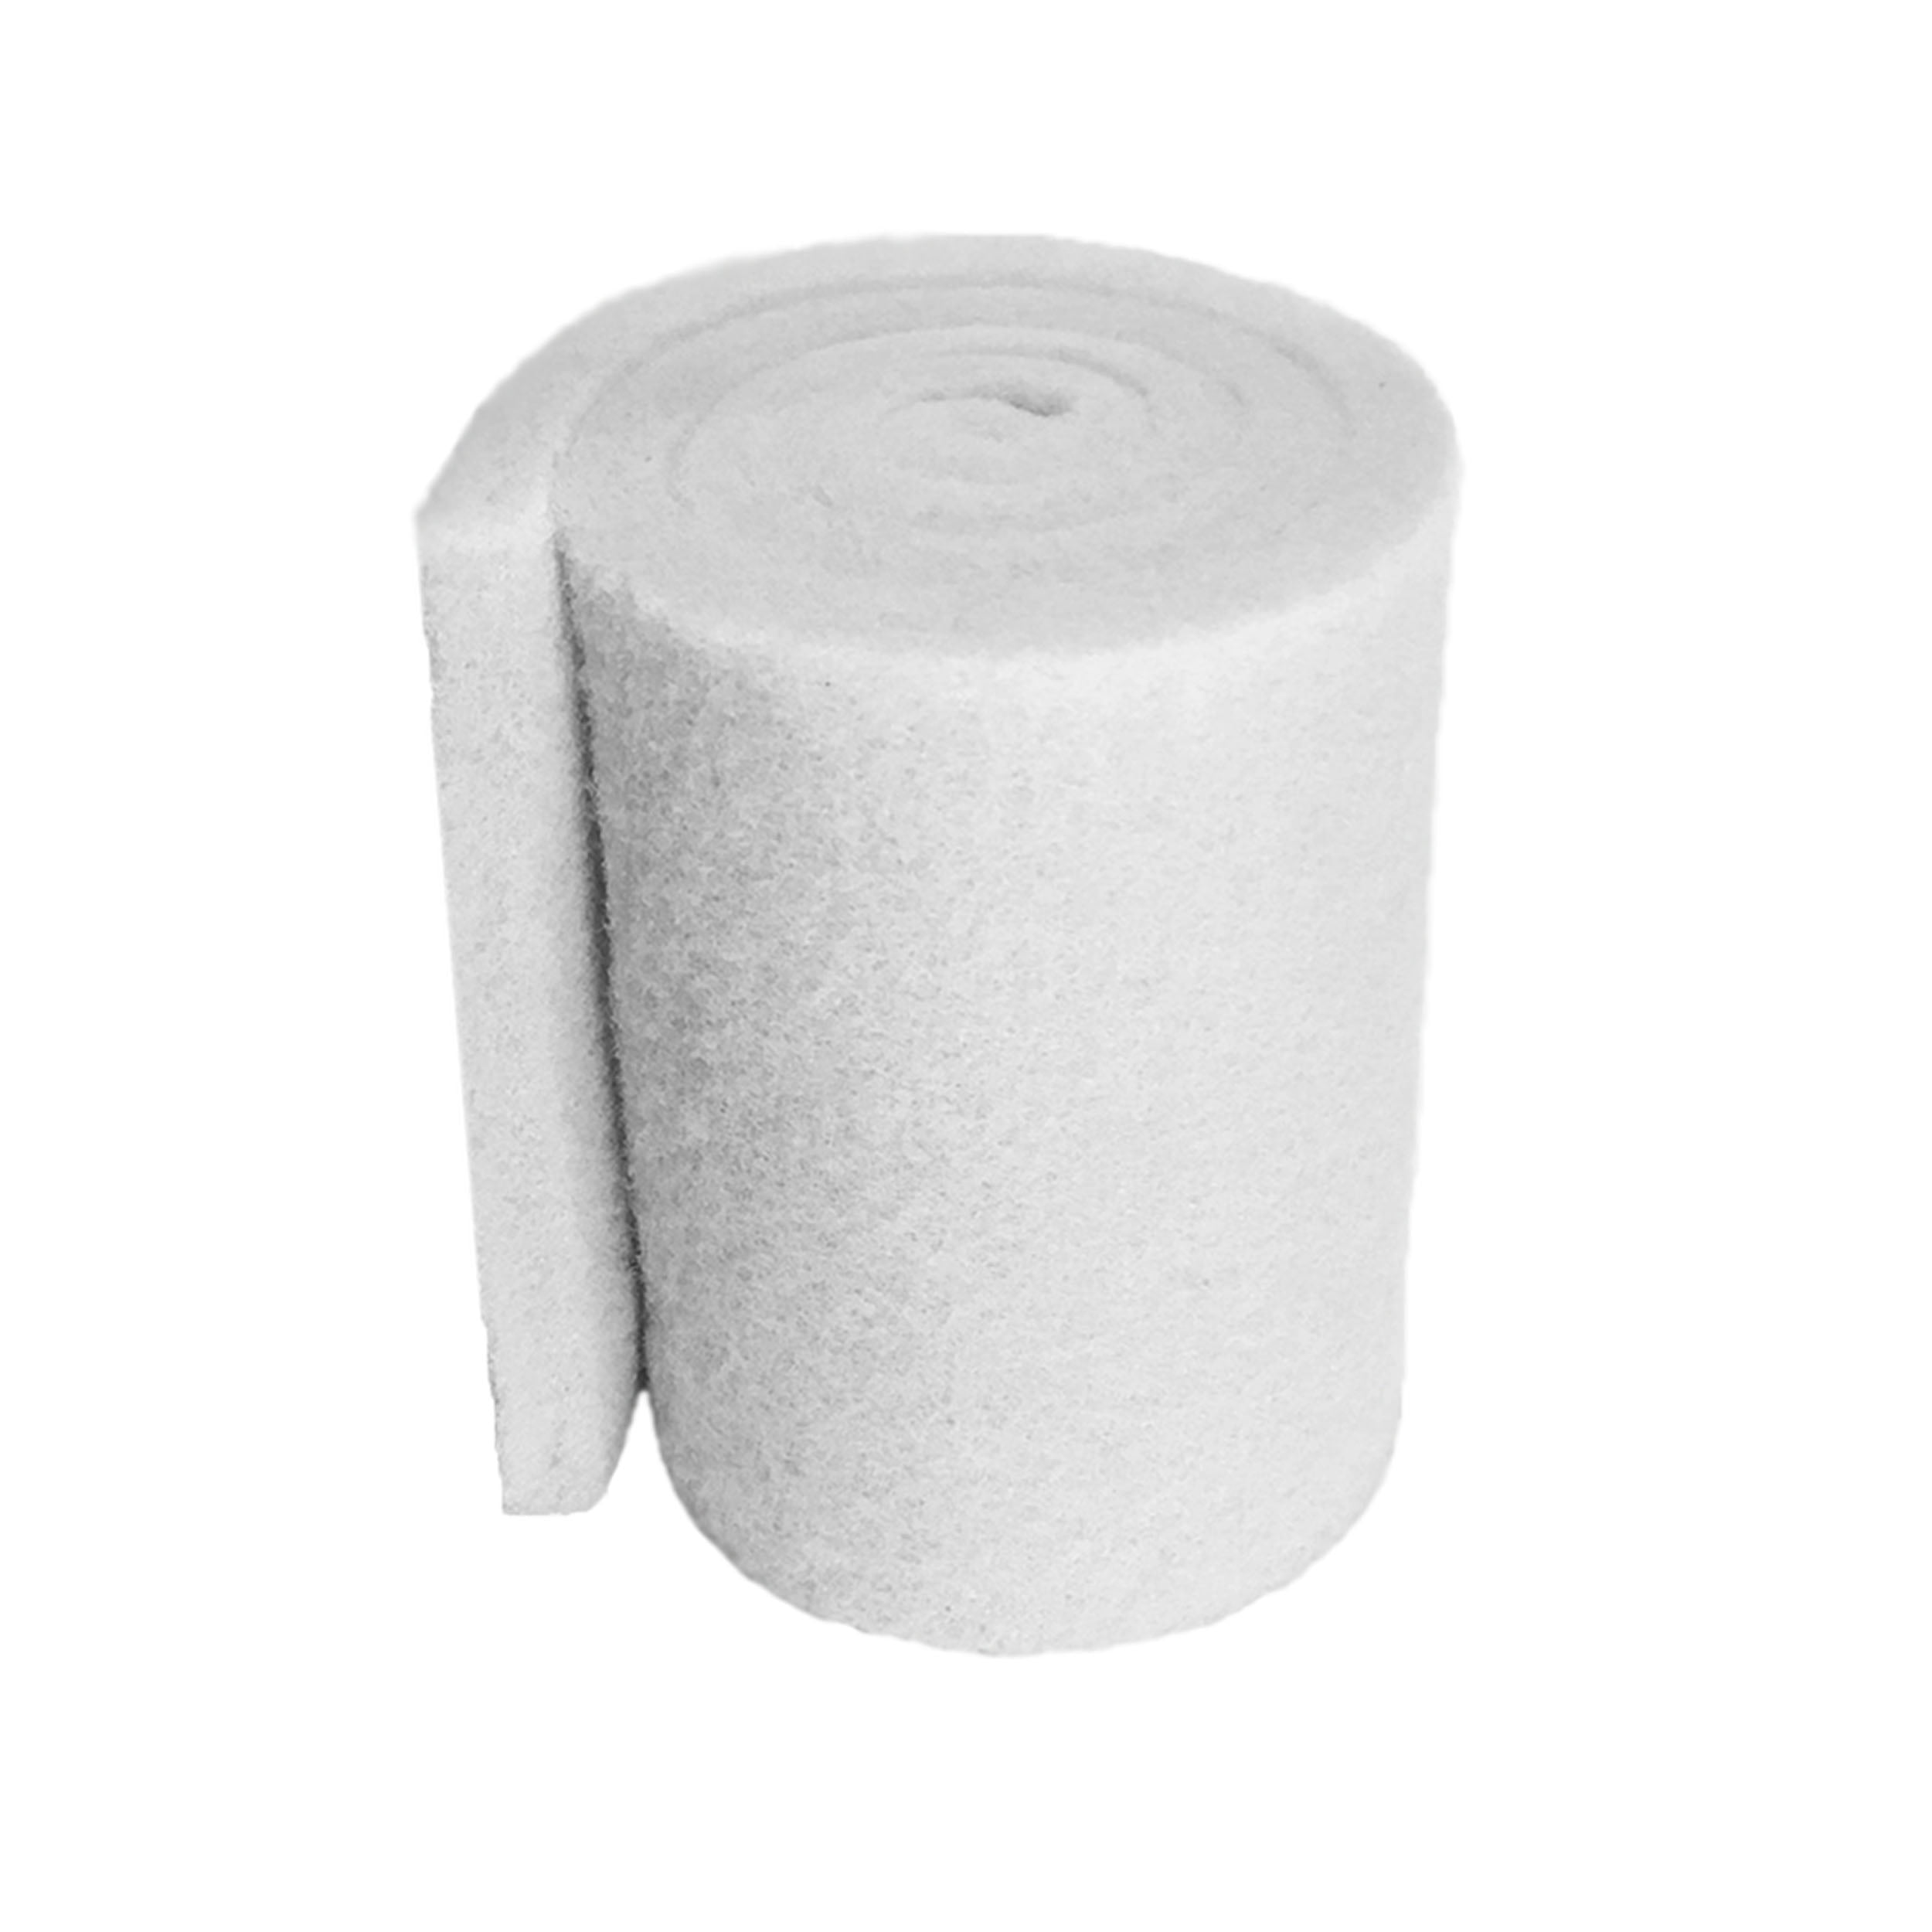 2" x 20" x 36" White Bulk Roll Filter Media for Koi Pond Filters & Skimmers 